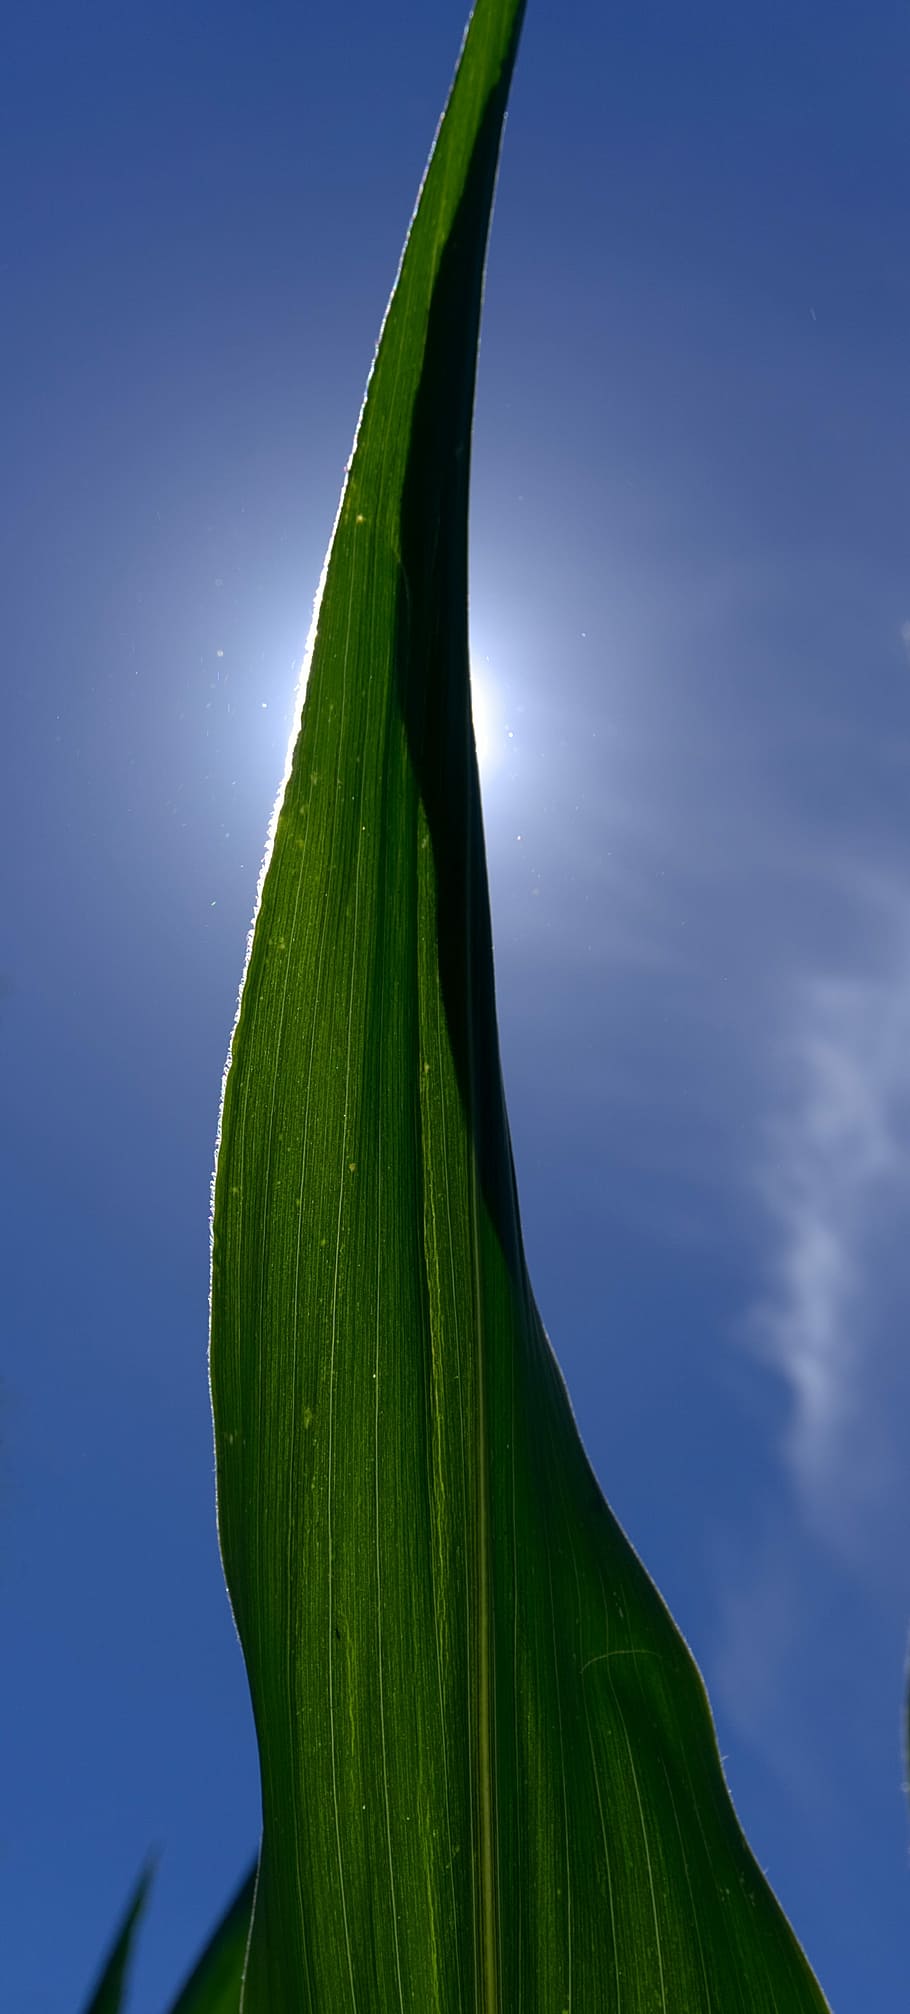 Maíz, hoja, luz de fondo, sol, hoja de maíz, rayo de sol, cielo, azul, verde, hojas